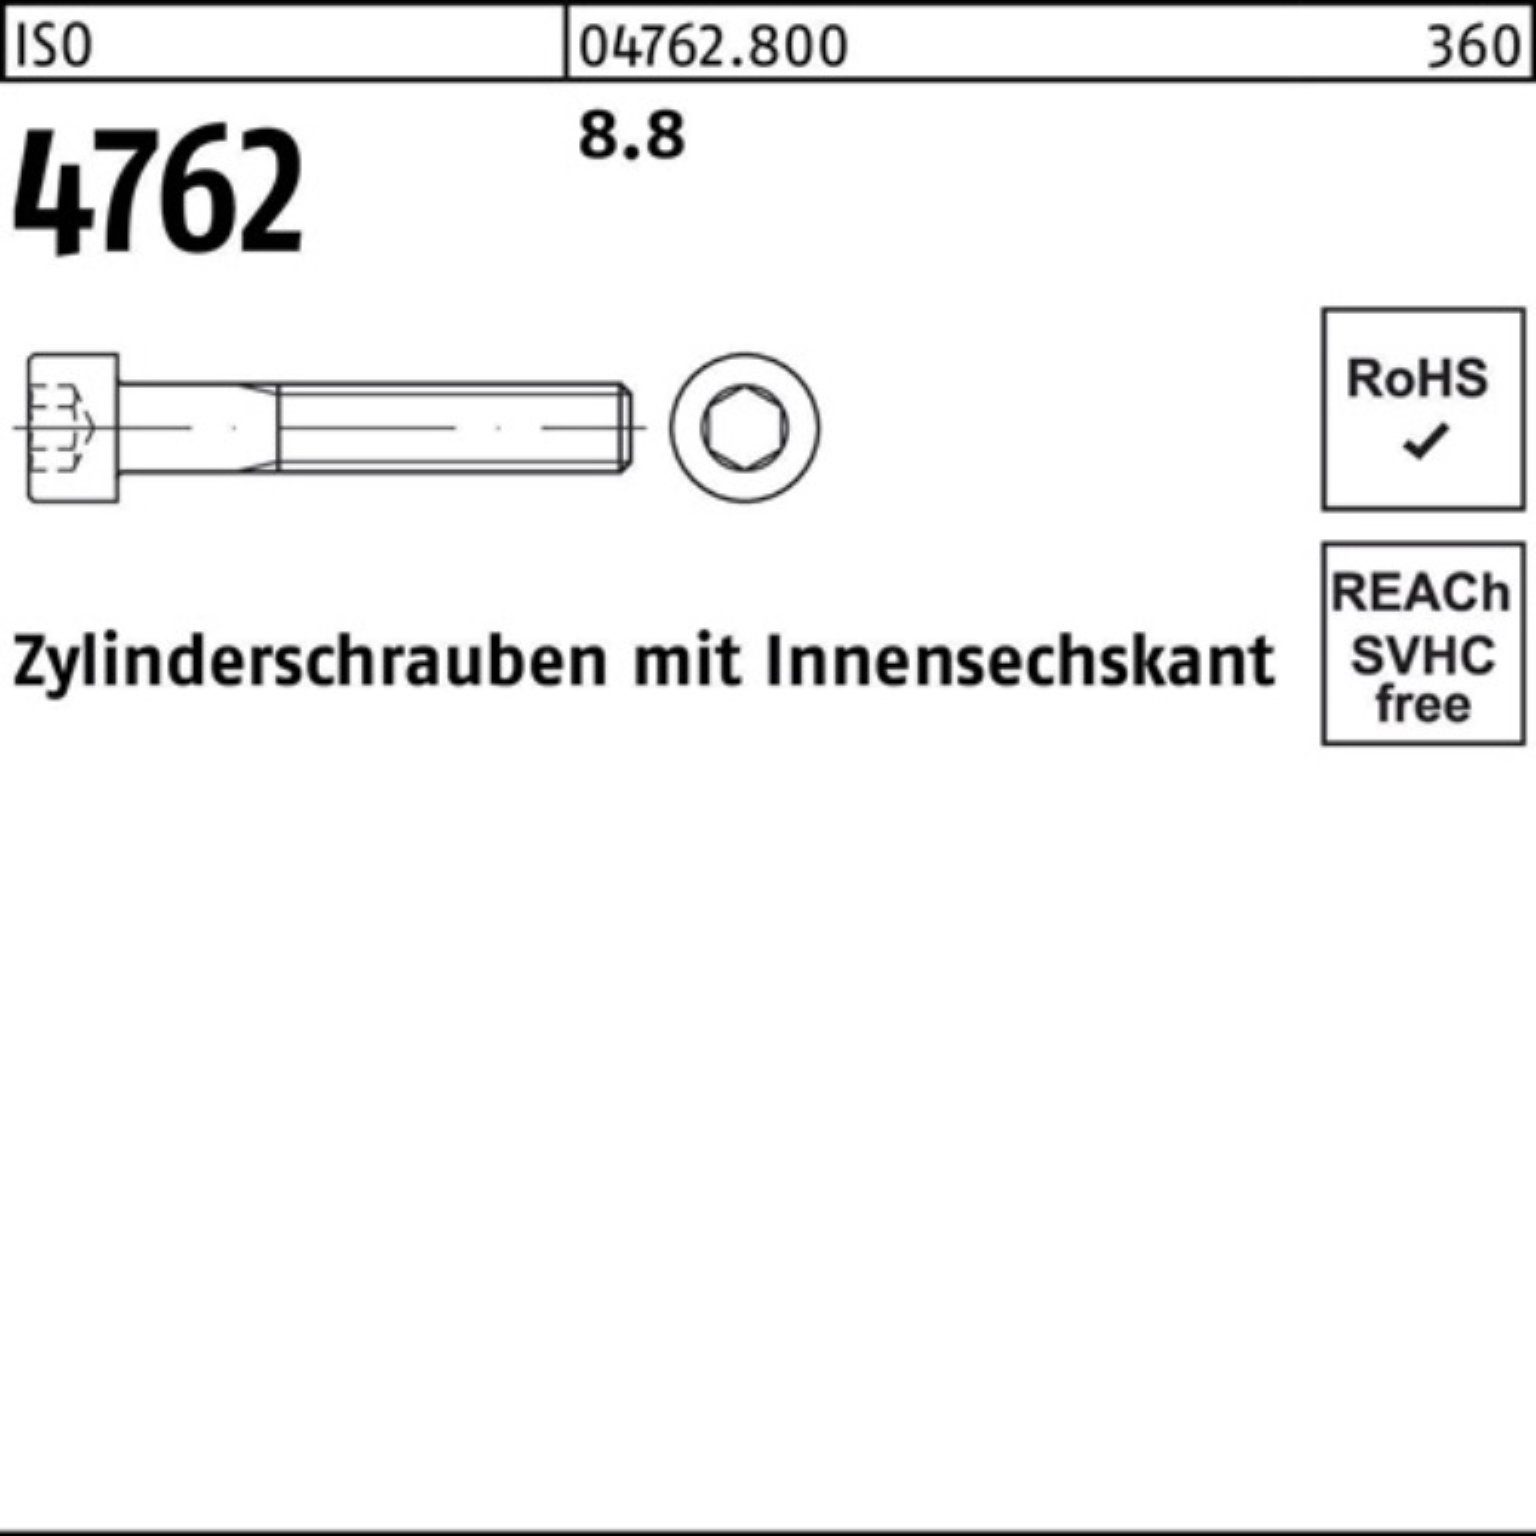 4762 Zylinderschraube Reyher Zylinderschraube Innen-6kt 10 480 8.8 Pack 100er ISO Stück M16x